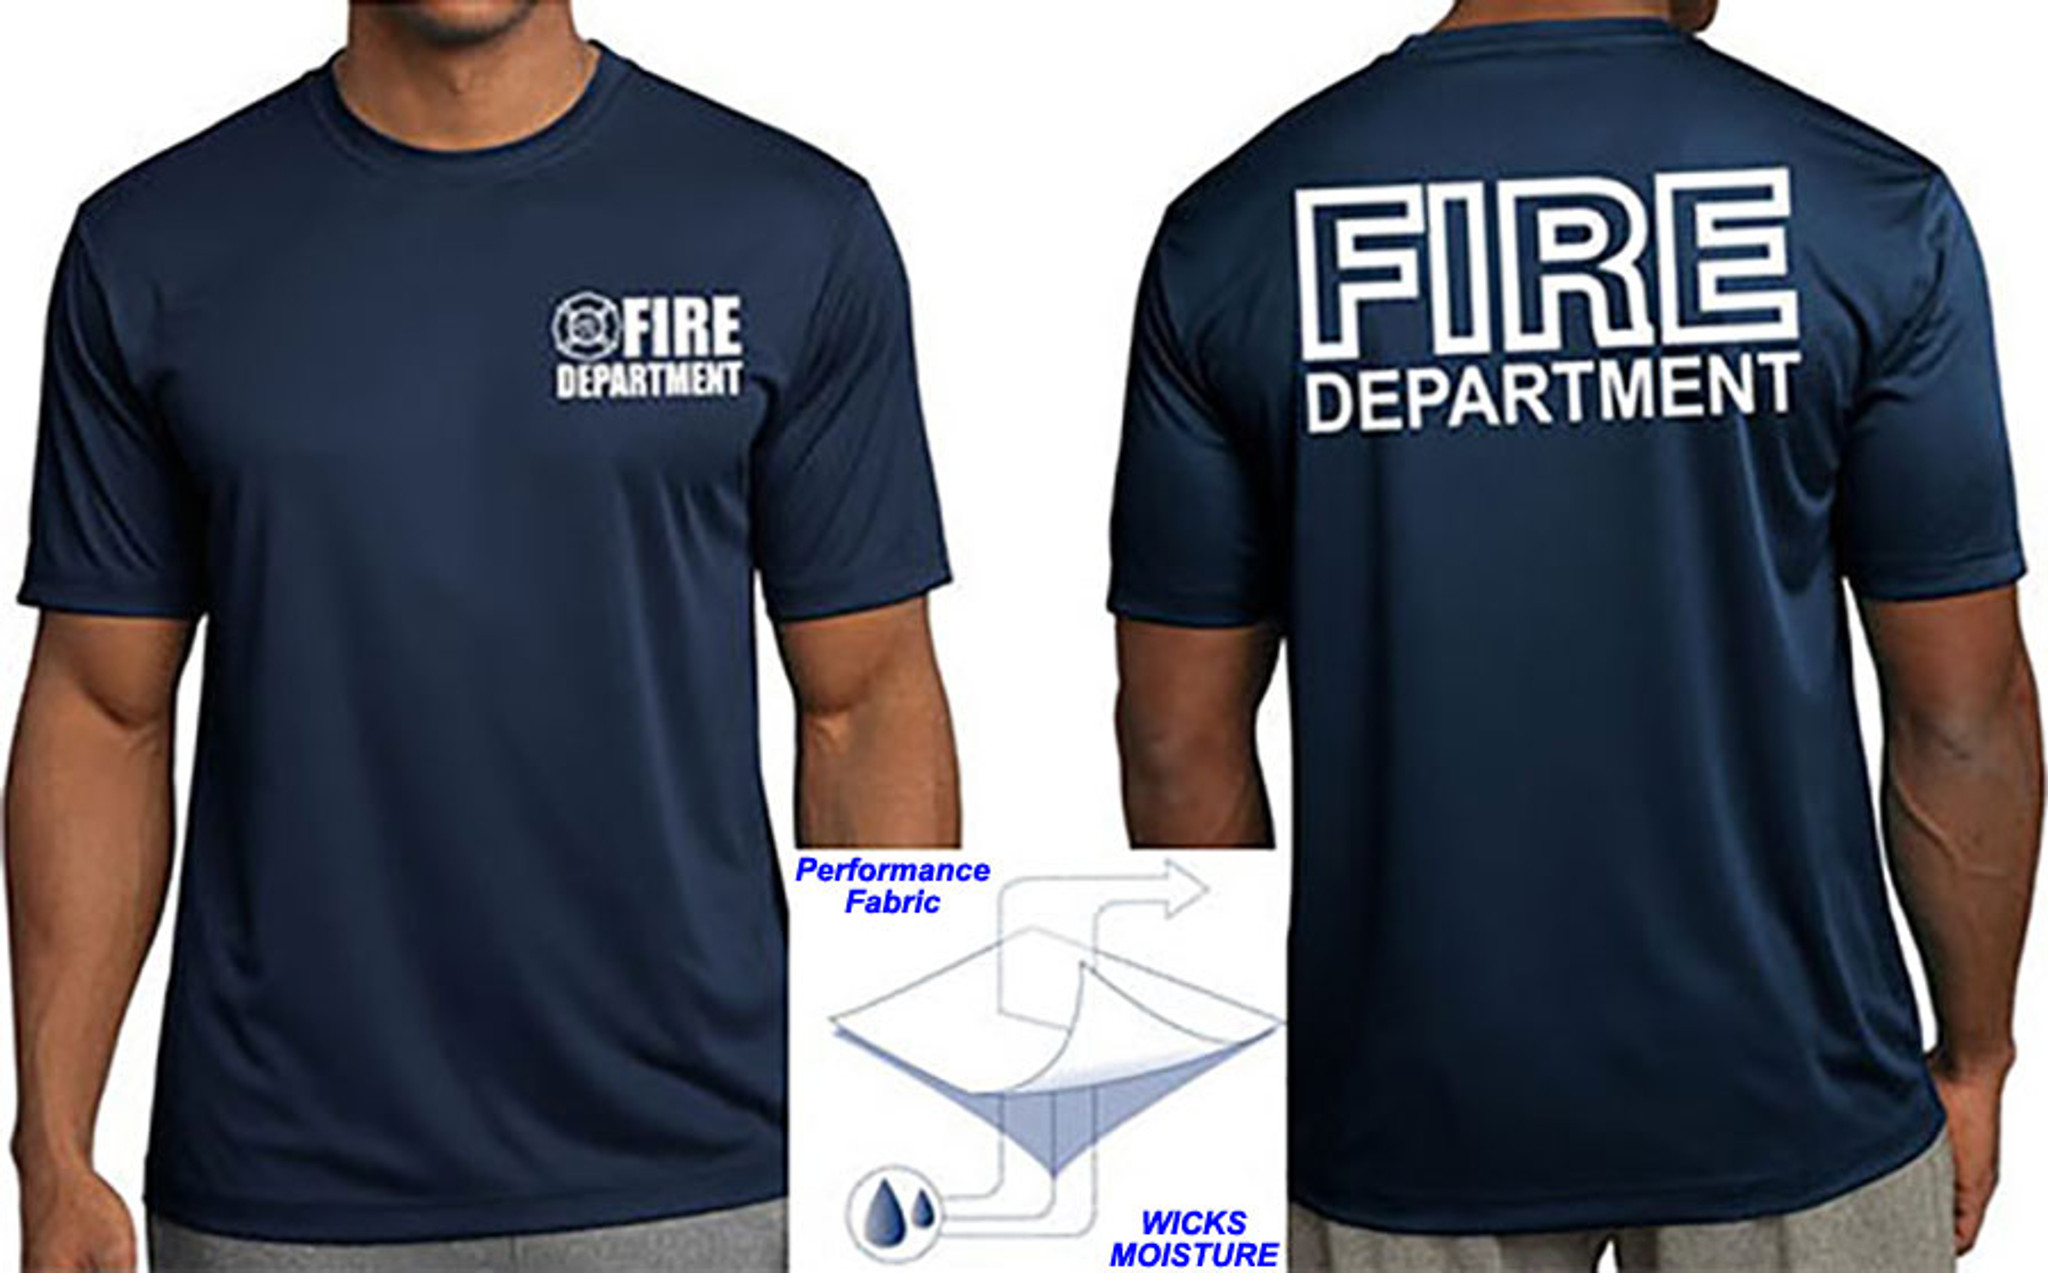 detroit fire department t shirts